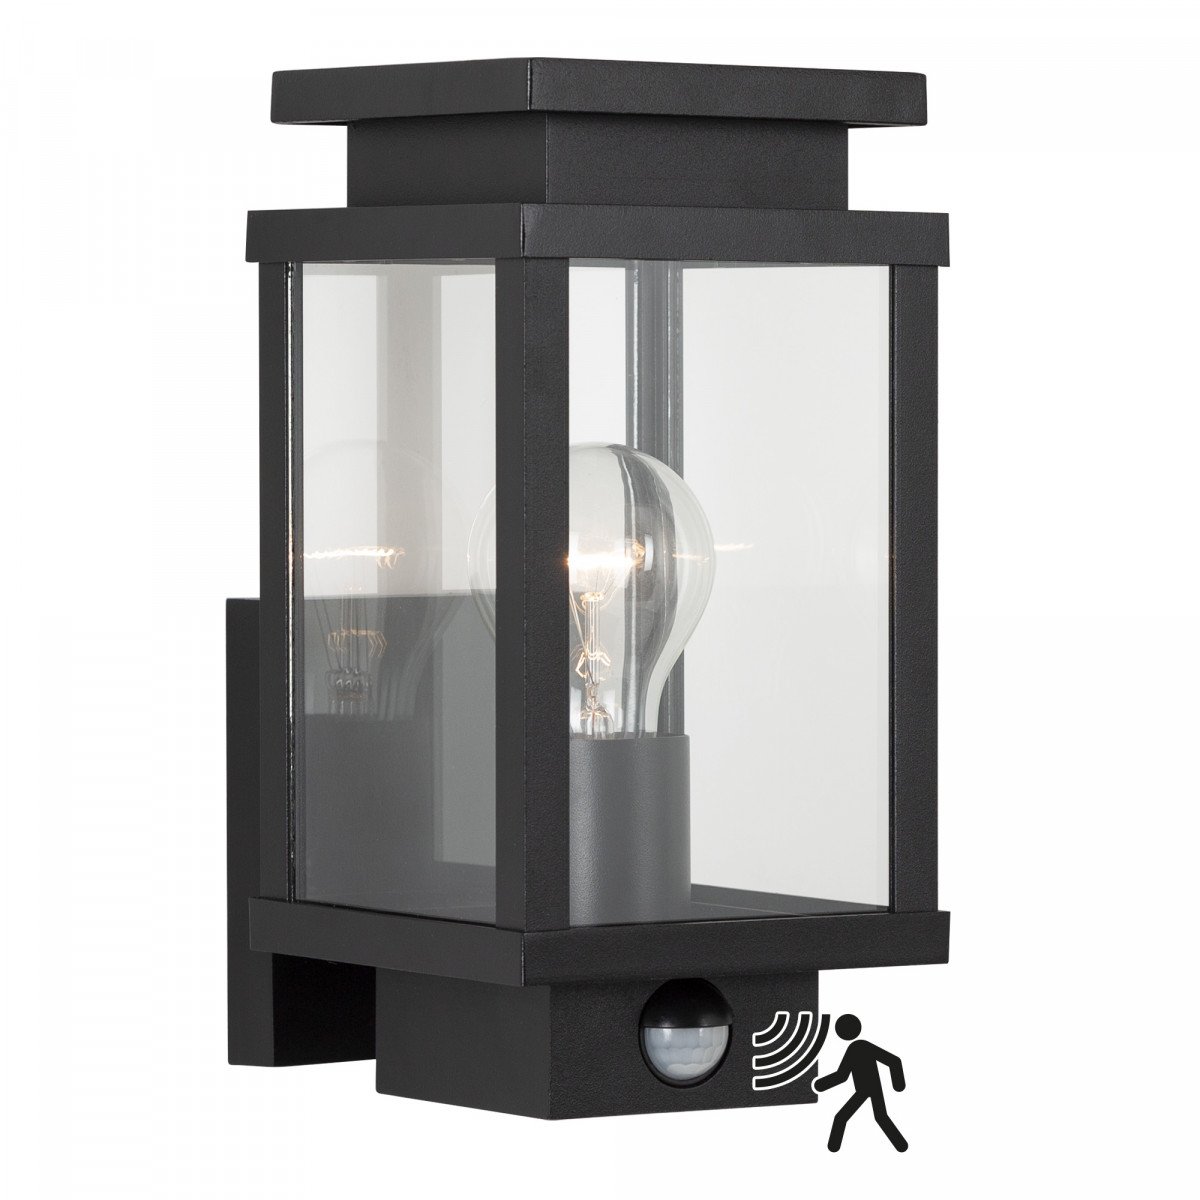 zwarte wandlamp met vierkante vorm en vensters met echt glas